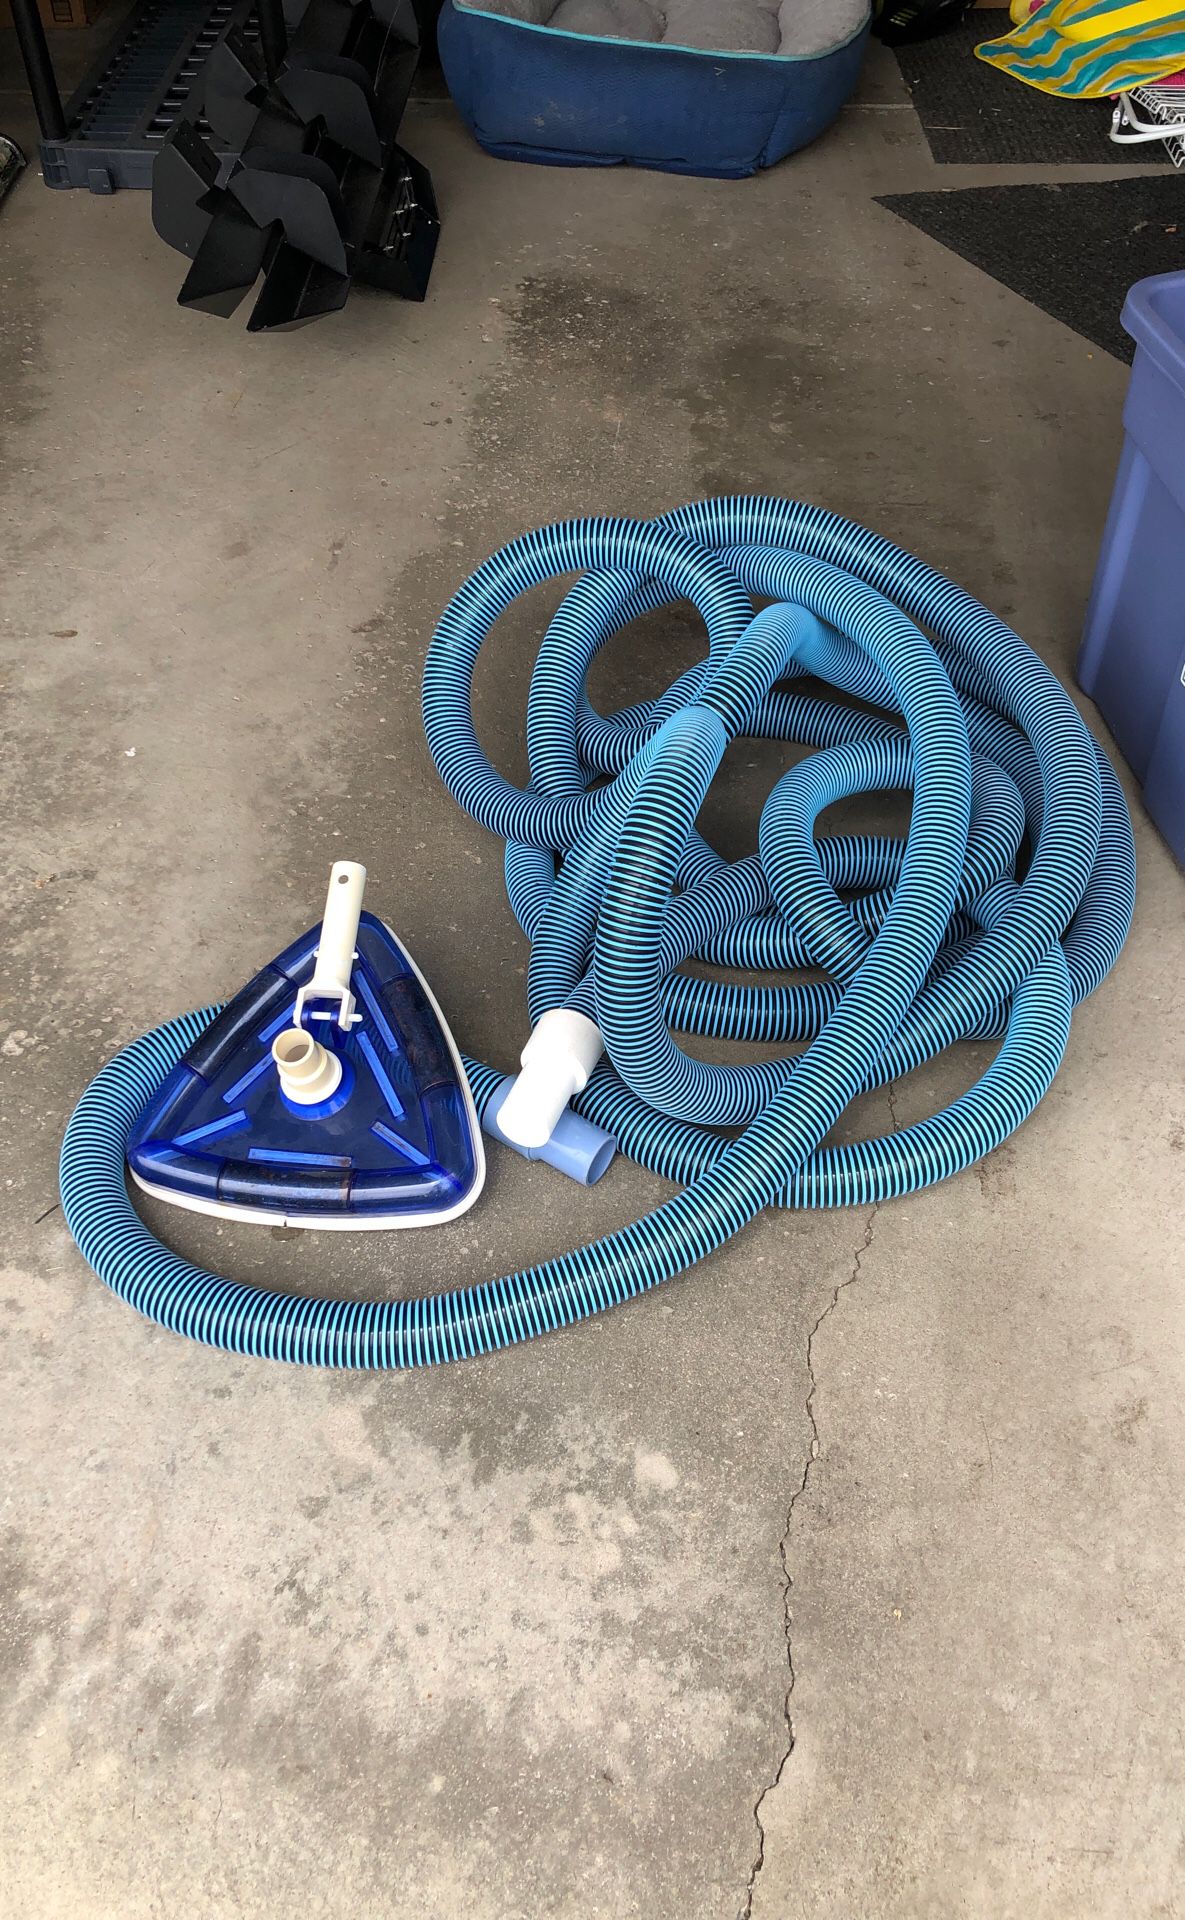 Pool vacuum